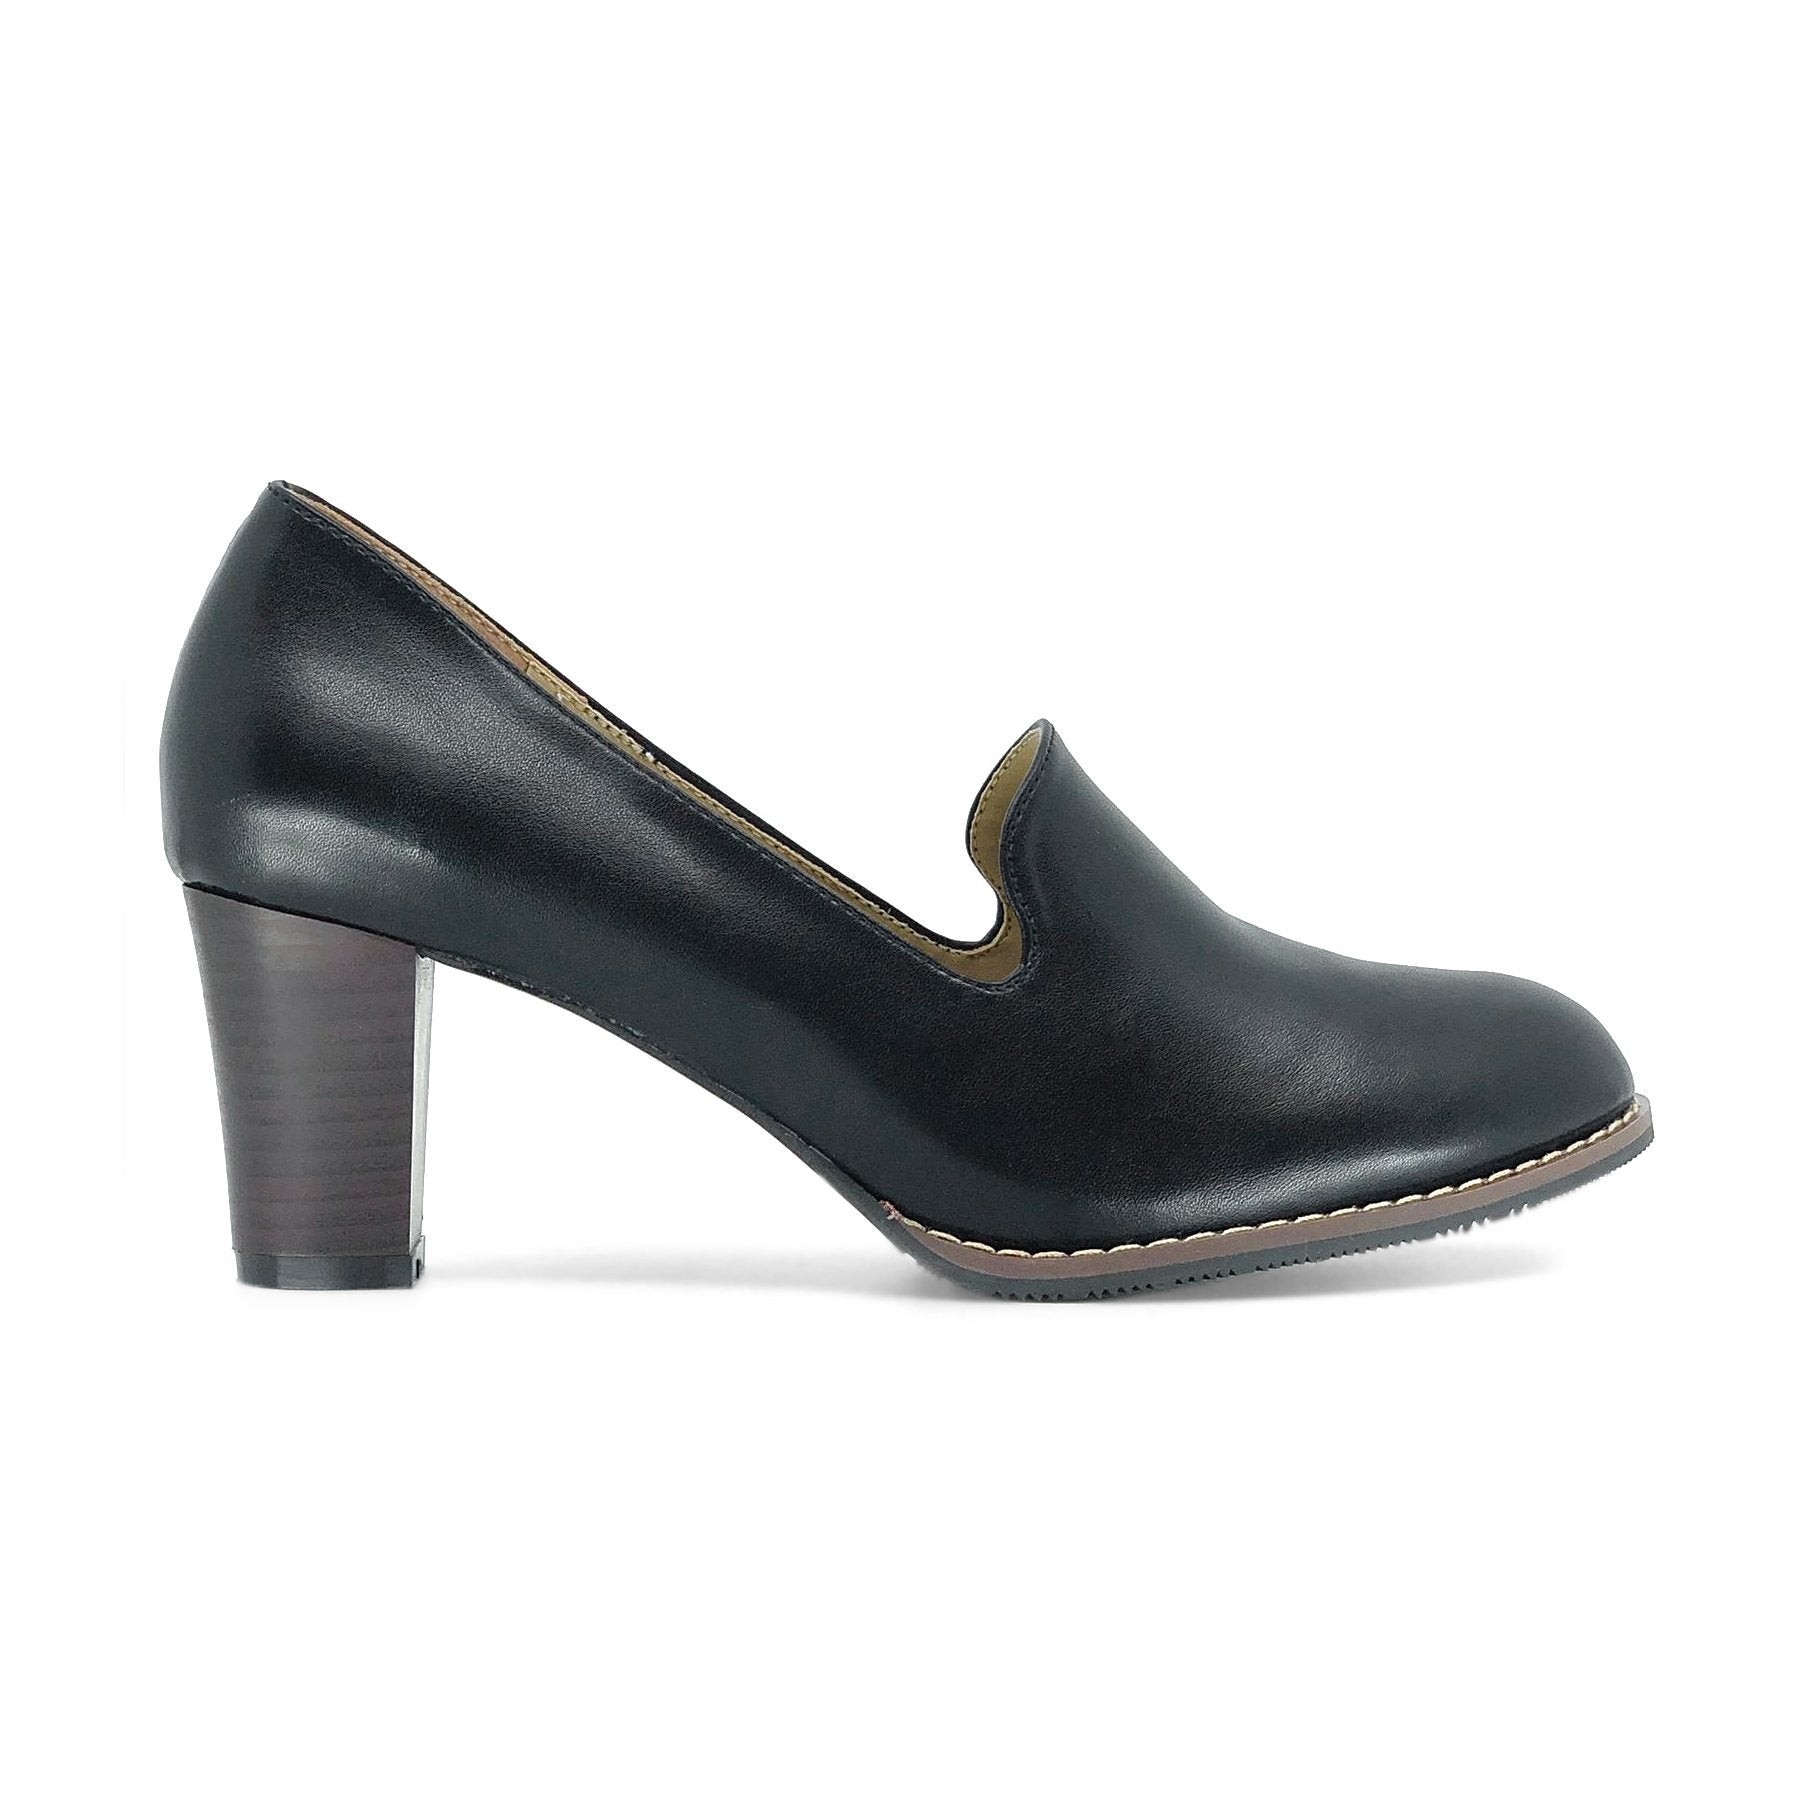 Ecco Pumps | De Louvre Shoes | Reviews on Judge.me